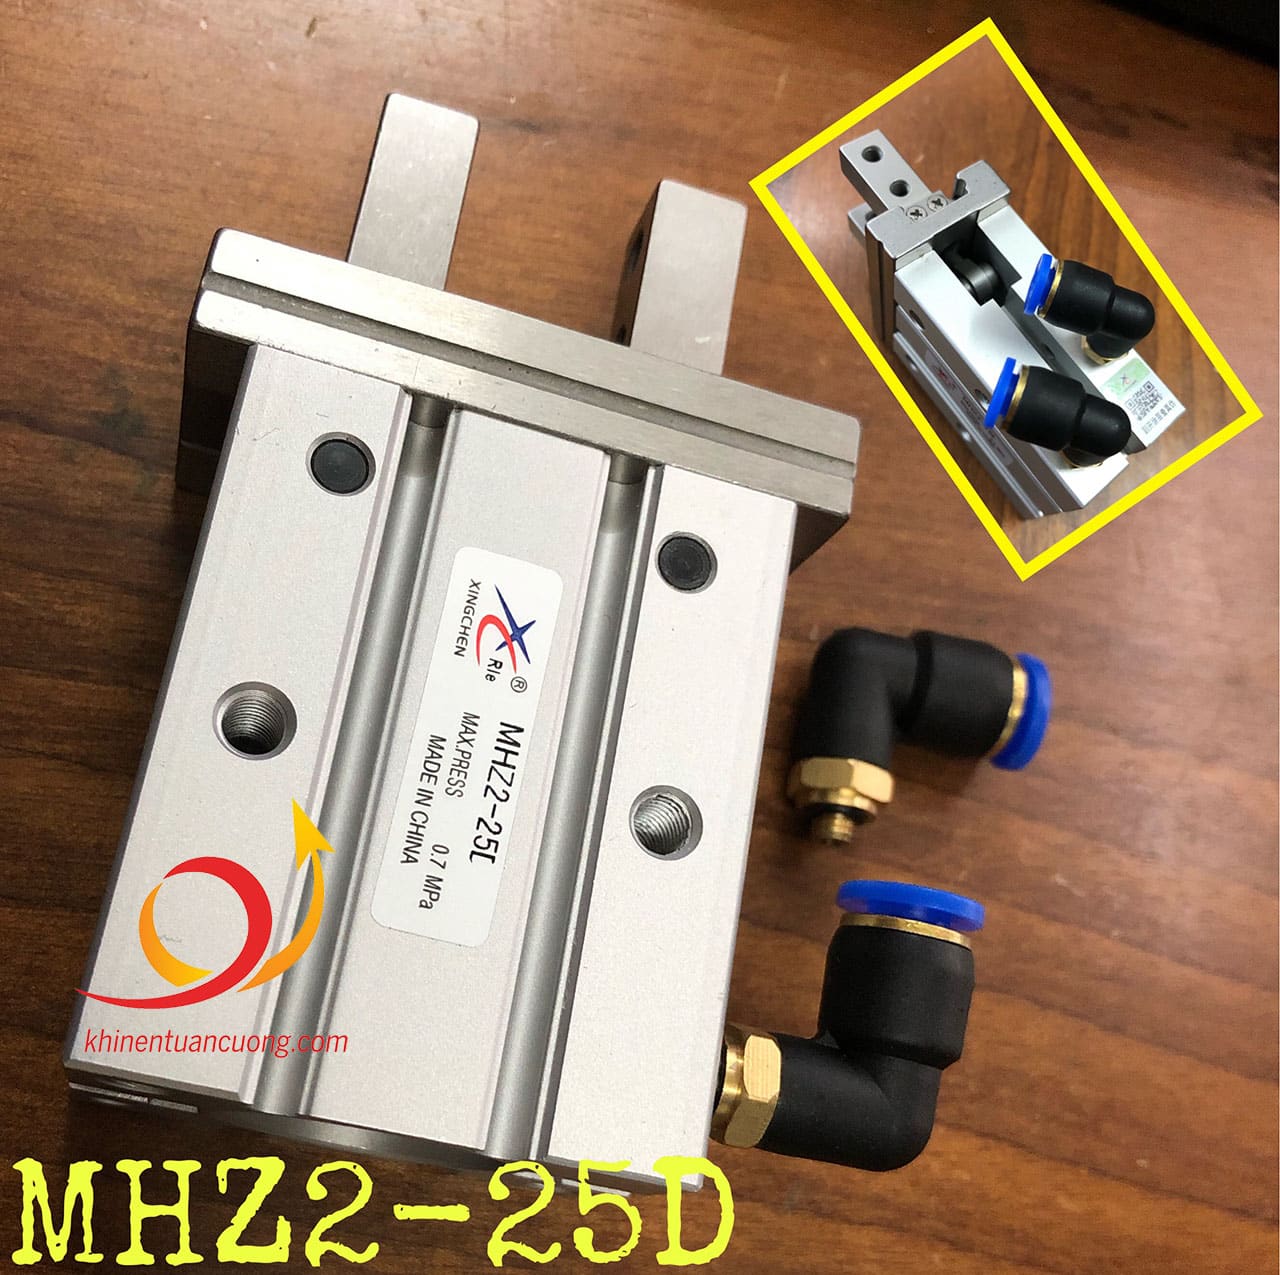 Cút nối góc ren nhỏ 5mm mã PL6-M5 BLCH lắp trên xylanh MHZ2-25D